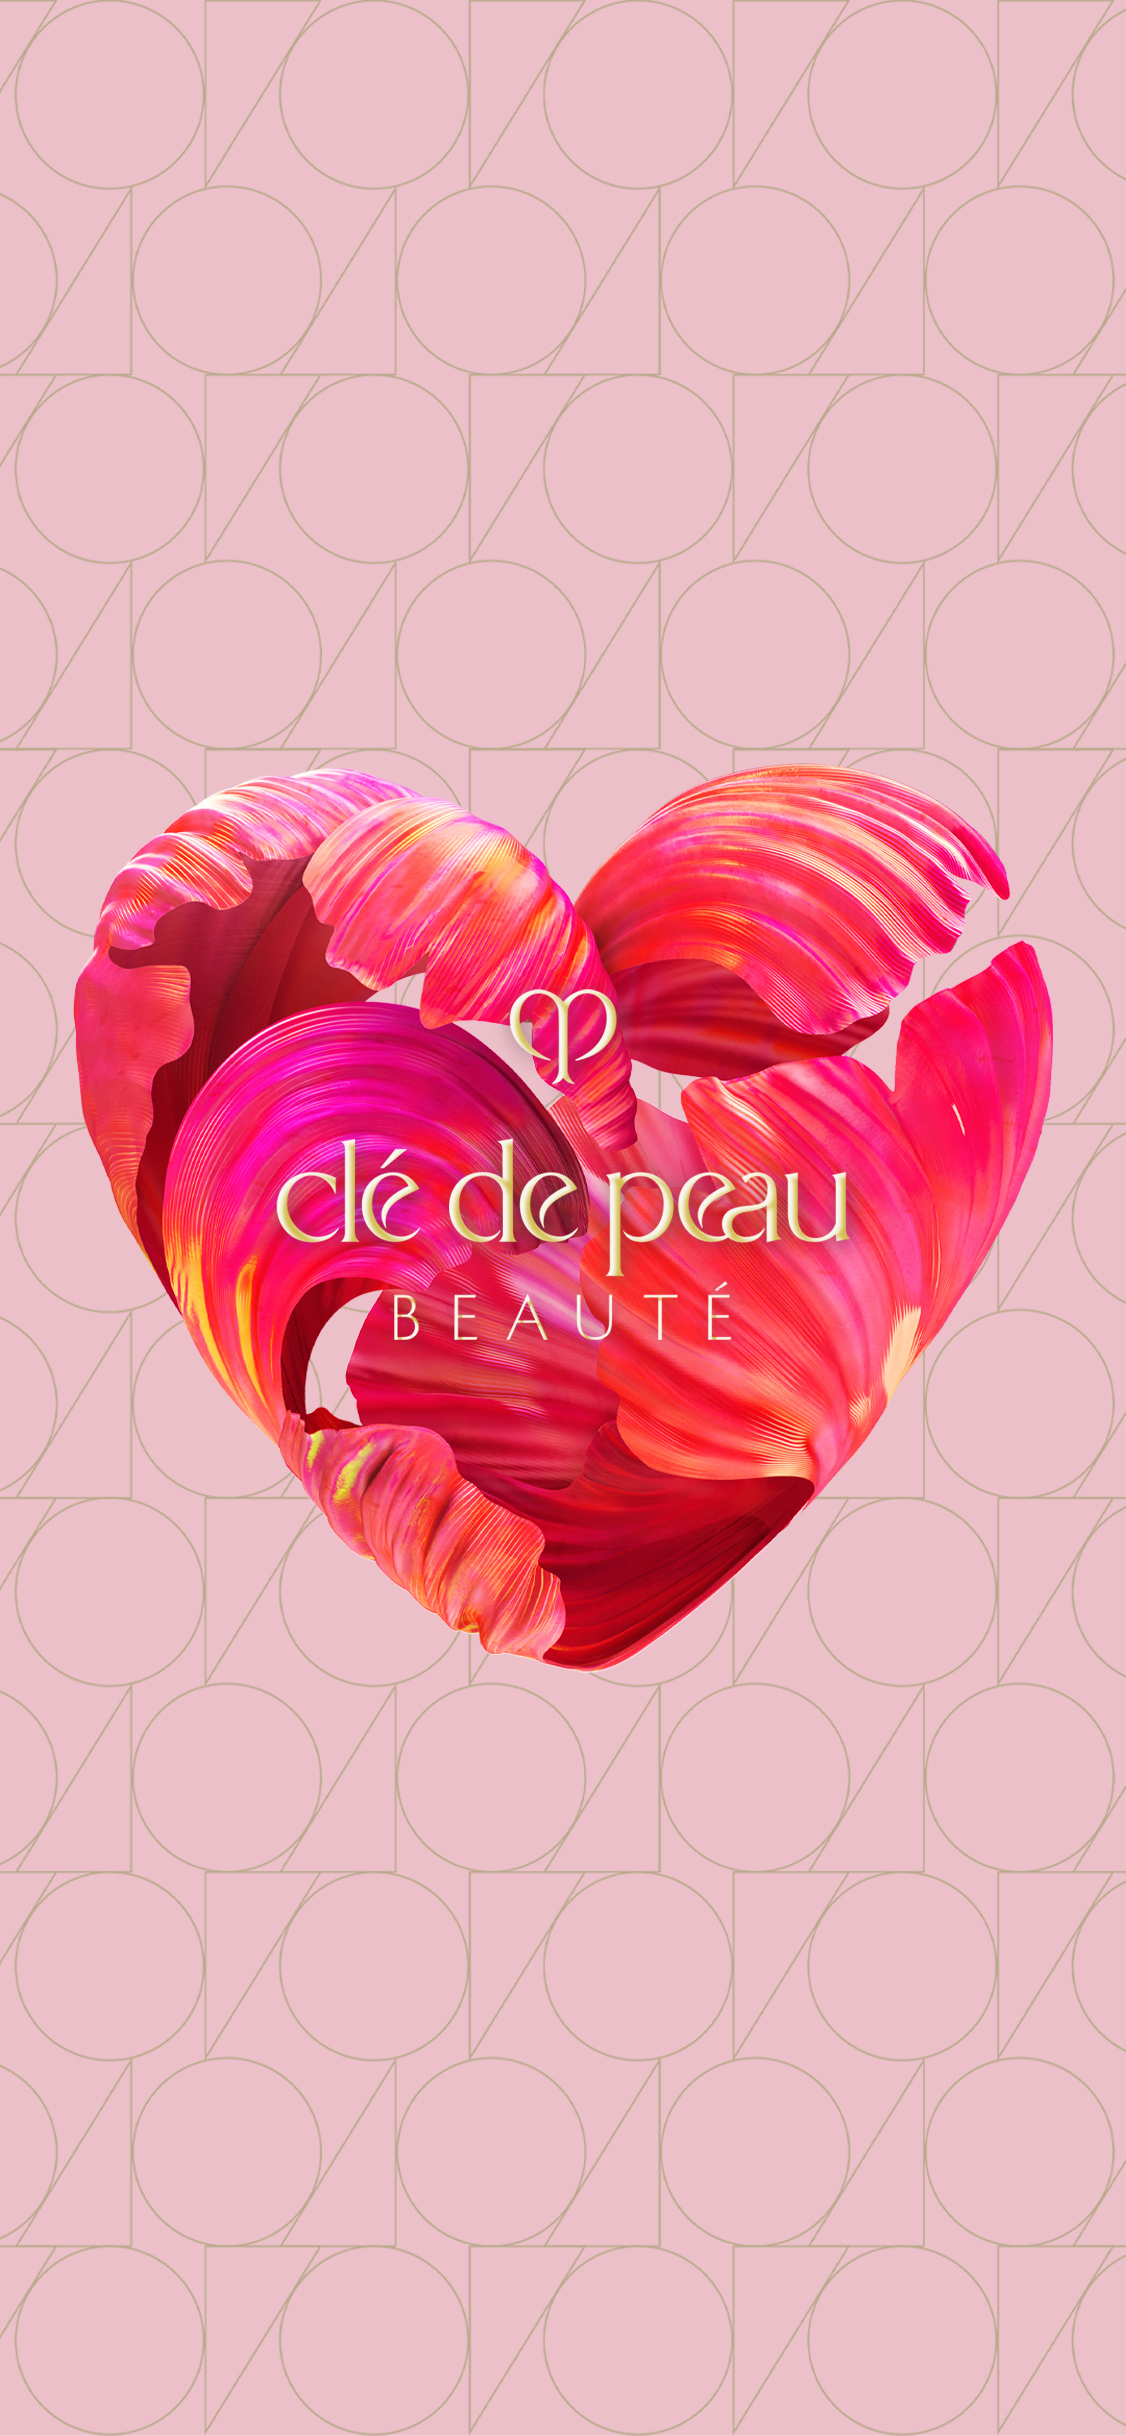 Clé de Peau Beauté: Với Clé de Peau Beauté, bạn sẽ trải nghiệm một làn da hoàn hảo như mơ ước. Sản phẩm của hãng này không chỉ đơn thuần là mỹ phẩm, mà còn là sự biến đổi và cải tiến cho làn da của bạn. Hãy xem hình ảnh liên quan để khám phá thêm về Clé de Peau Beauté!